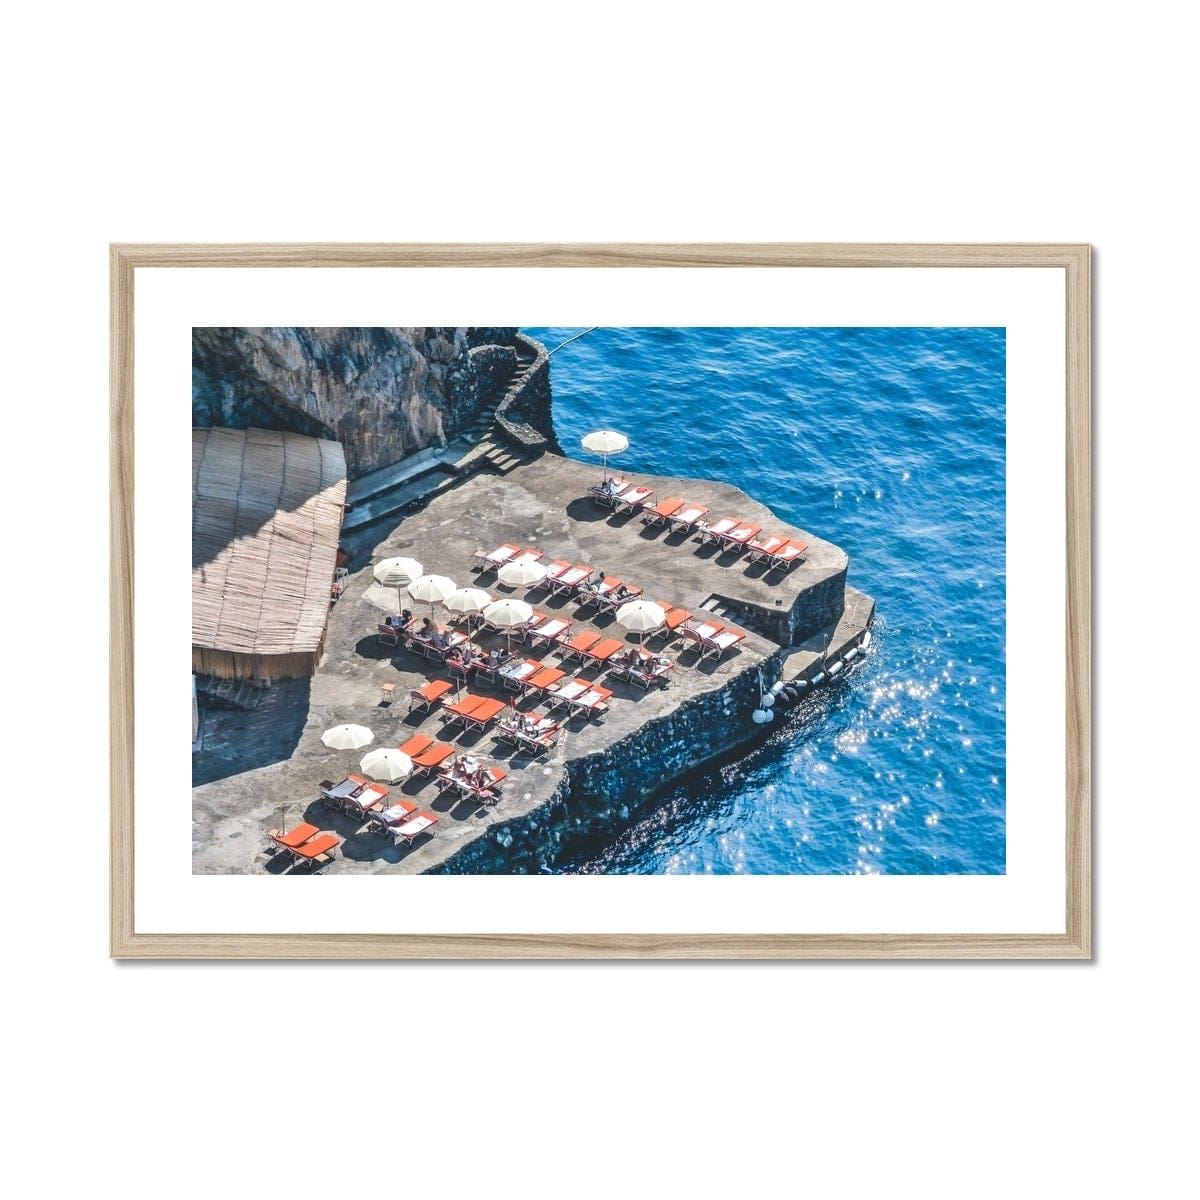 Adam Davies Framed 16"x12" (40.64x30.48cm) / Natural Frame Sunbathing Sorrento Italy Framed Print